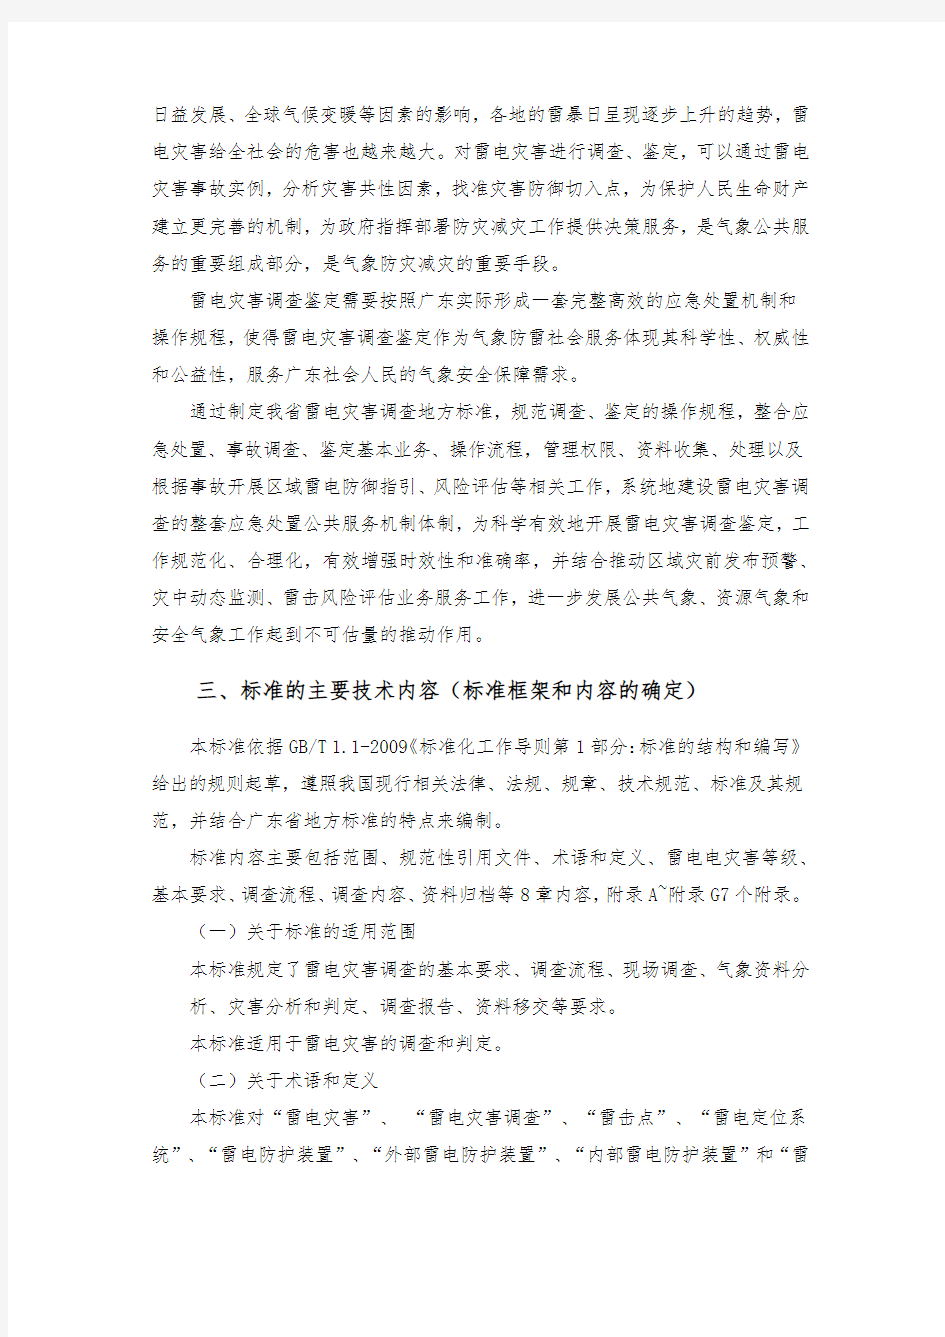 《雷电灾害调查规程》(报批稿)编制说明-广东地方标准